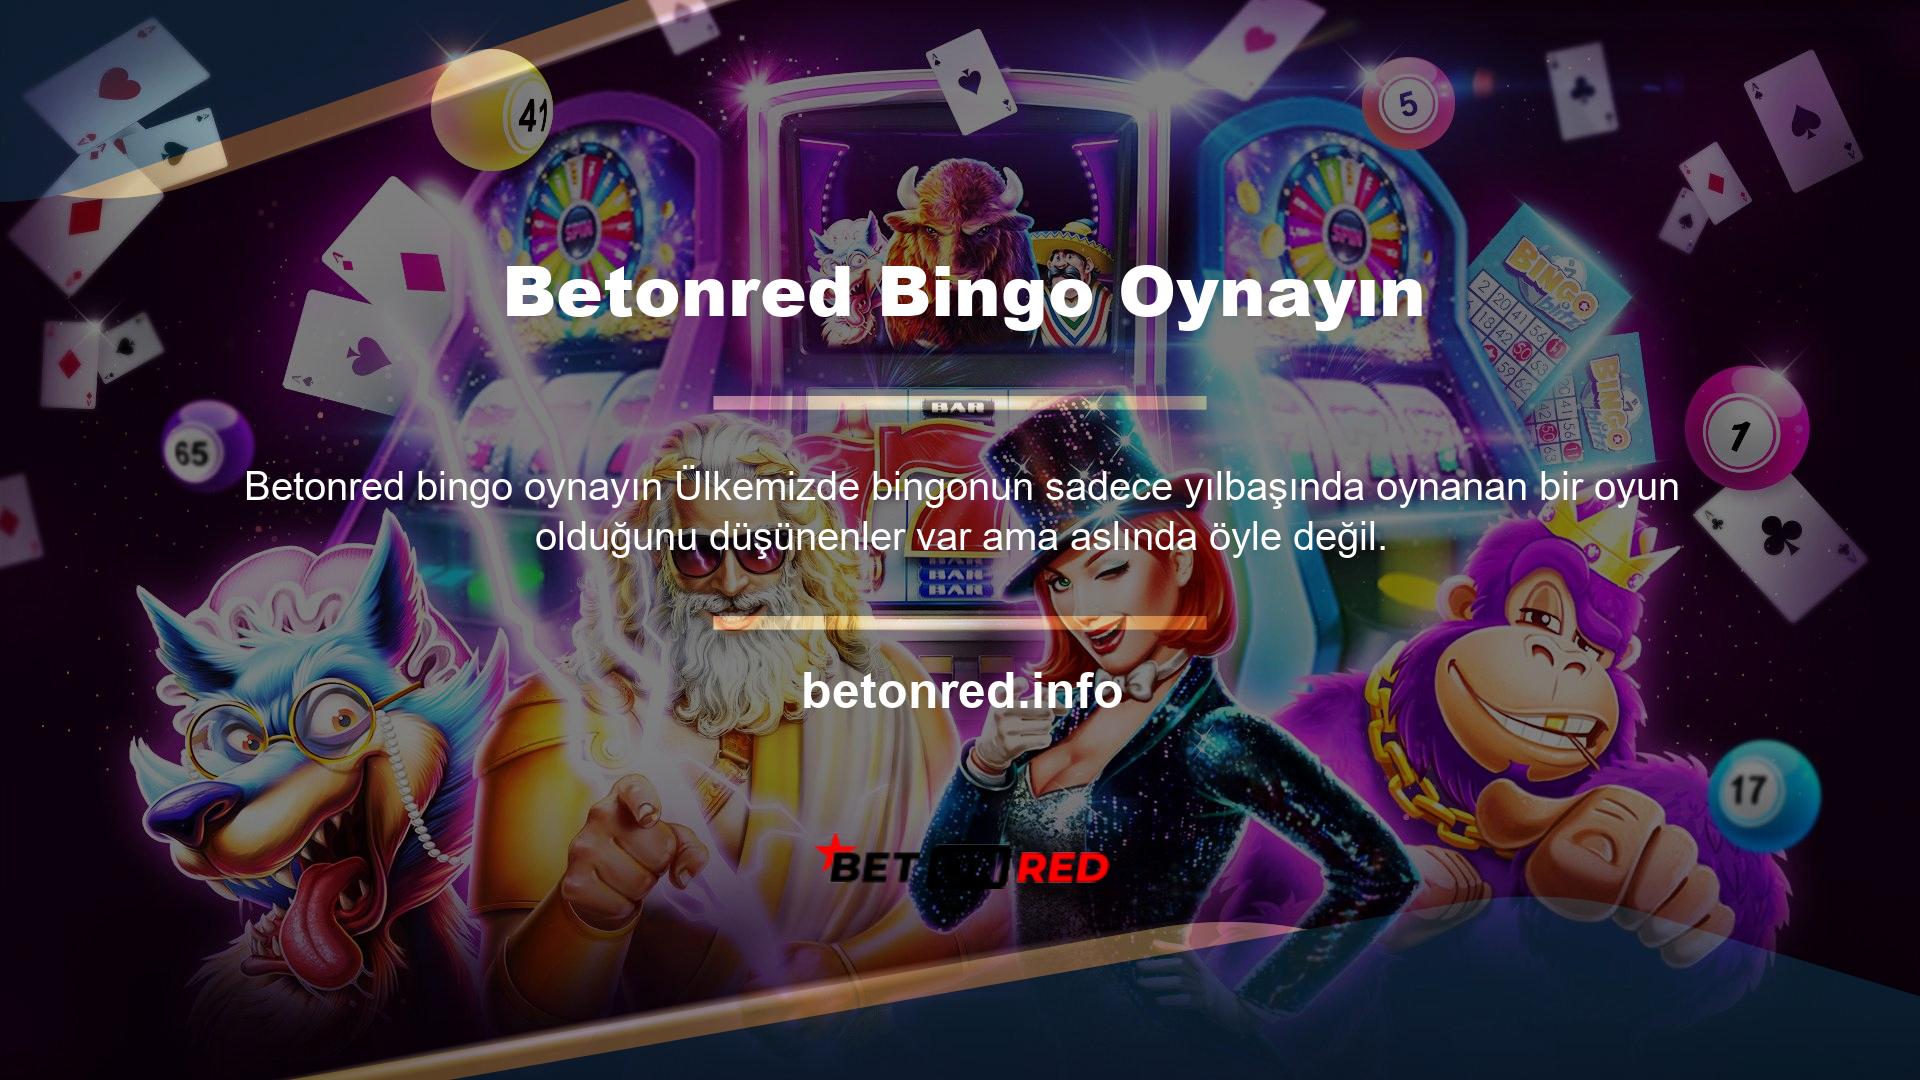 Bingo sadece Türkiye'de değil tüm dünyada casino oyunu olarak oynanmakta ve çok sayıda bingo oyuncusu bulunmaktadır